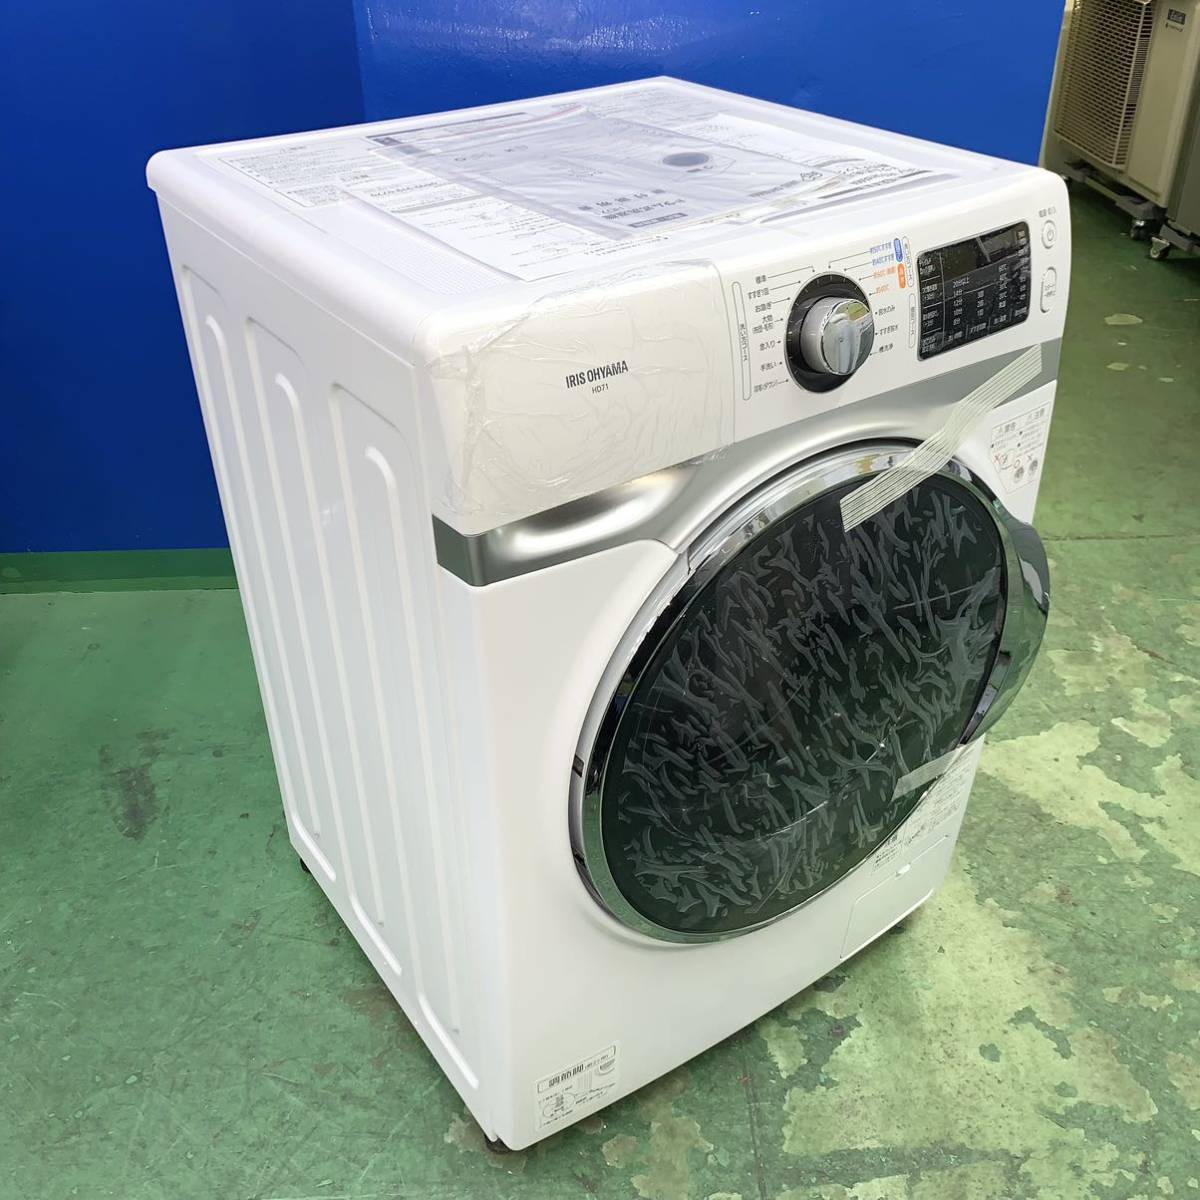 ◇IRIS OHYAMA◇ドラム式洗濯機 2021年7.5kg新品未使用 大阪市近郊配送